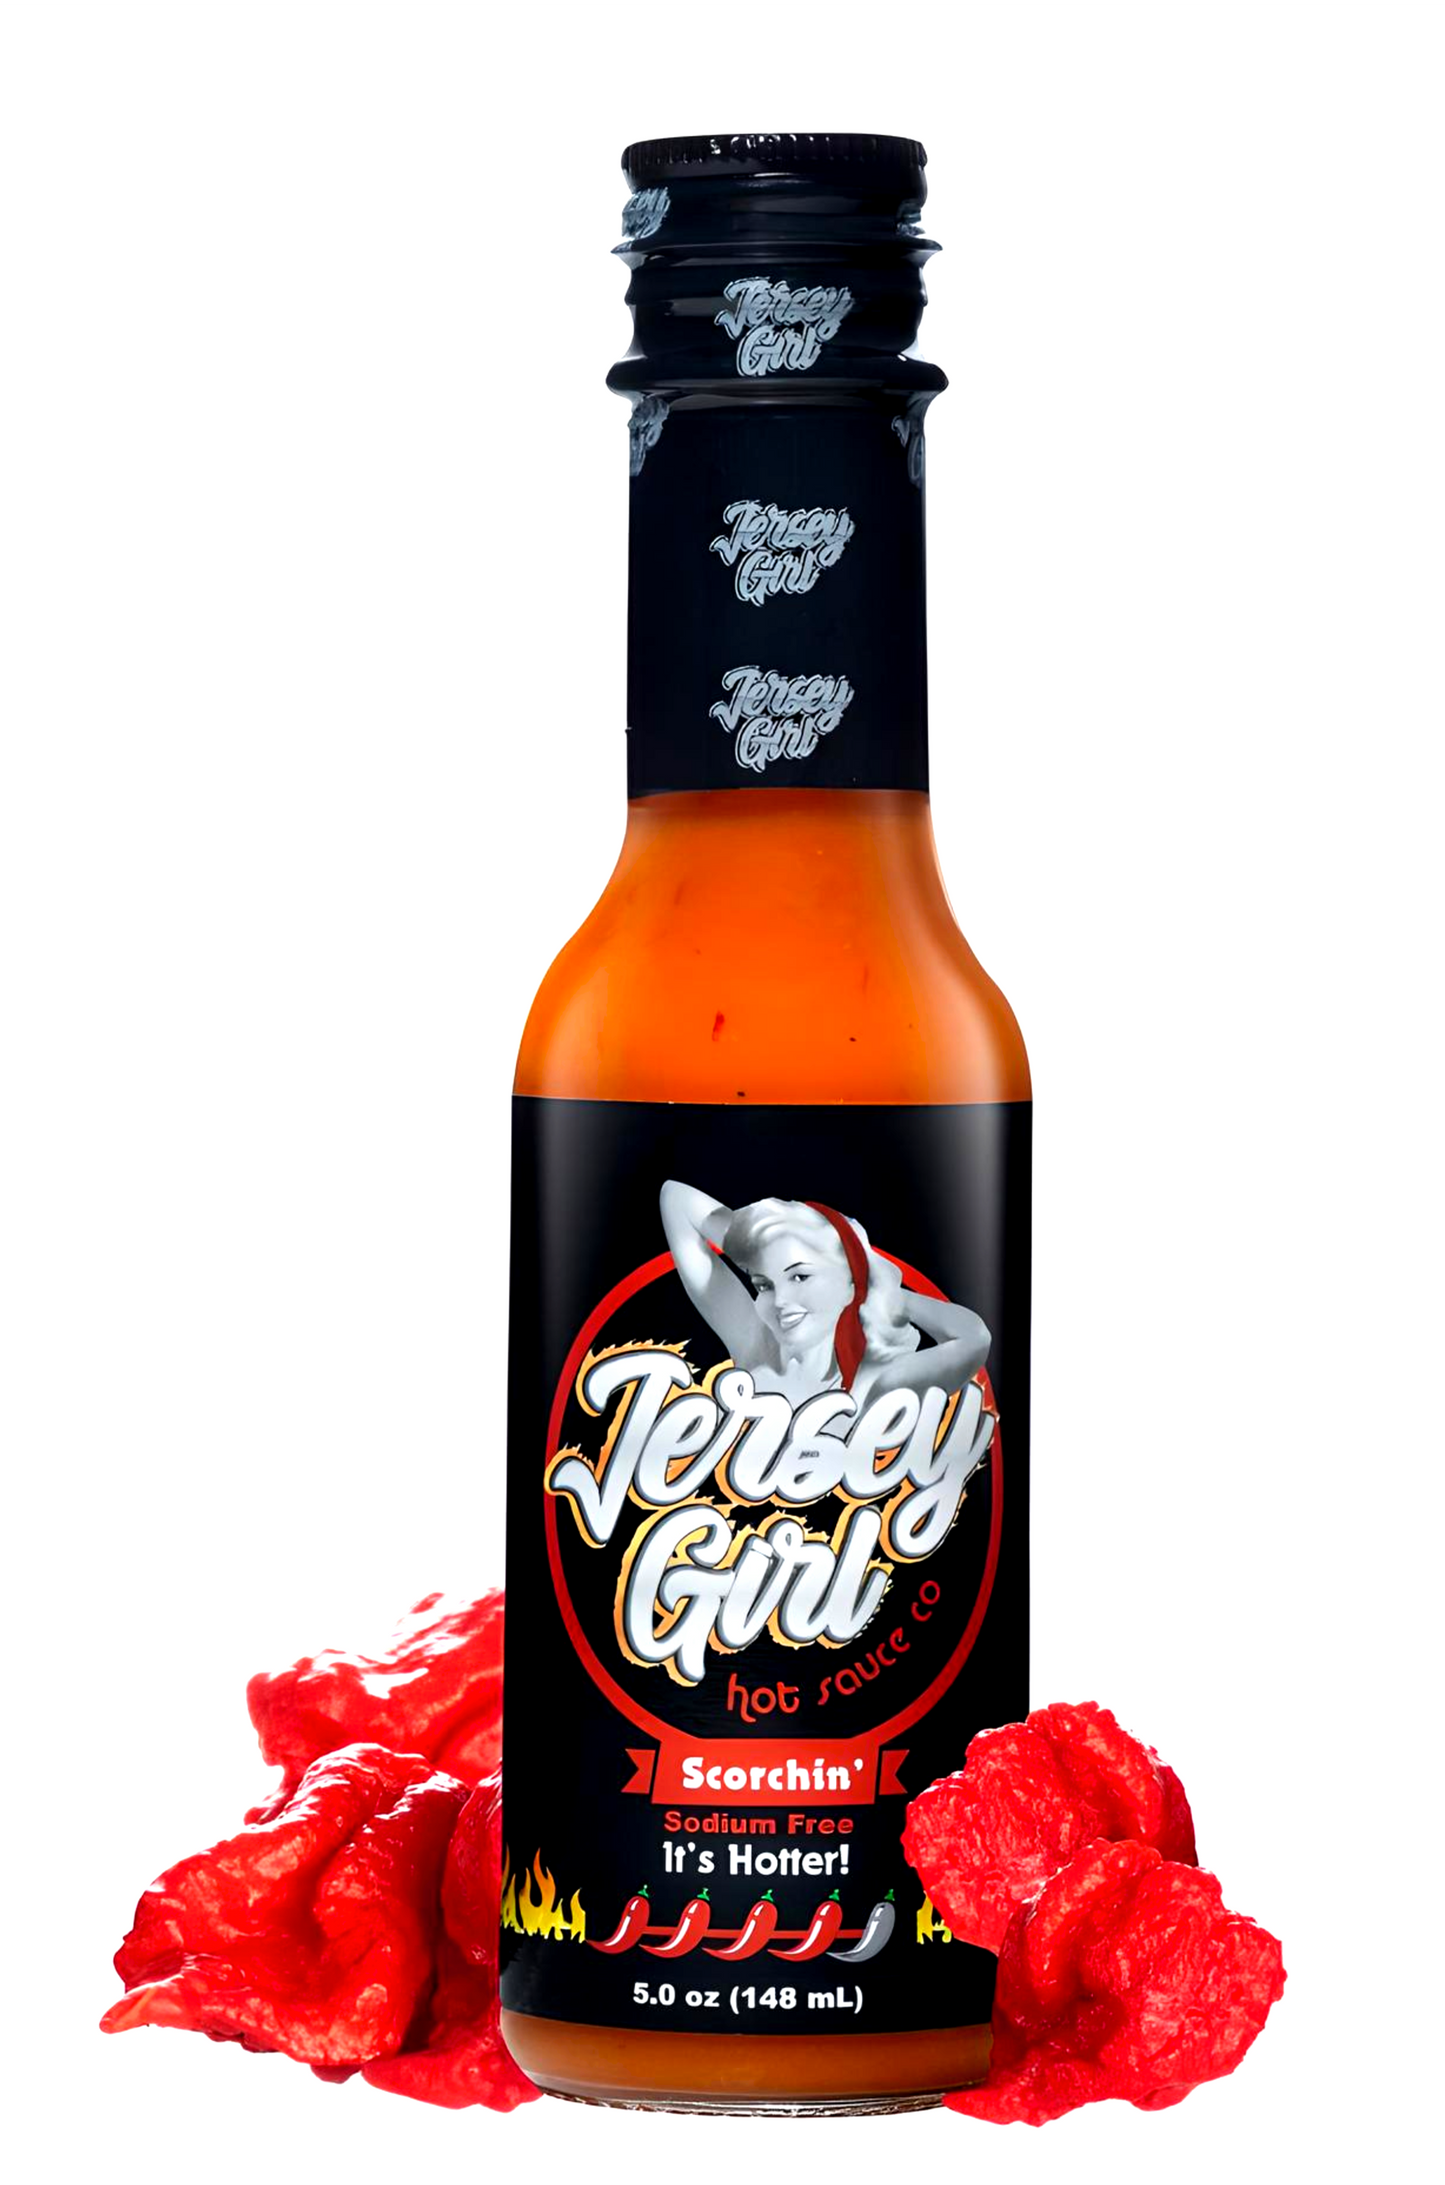 Jersey Girl Carolina Reaper Scorchin Hot Sauce